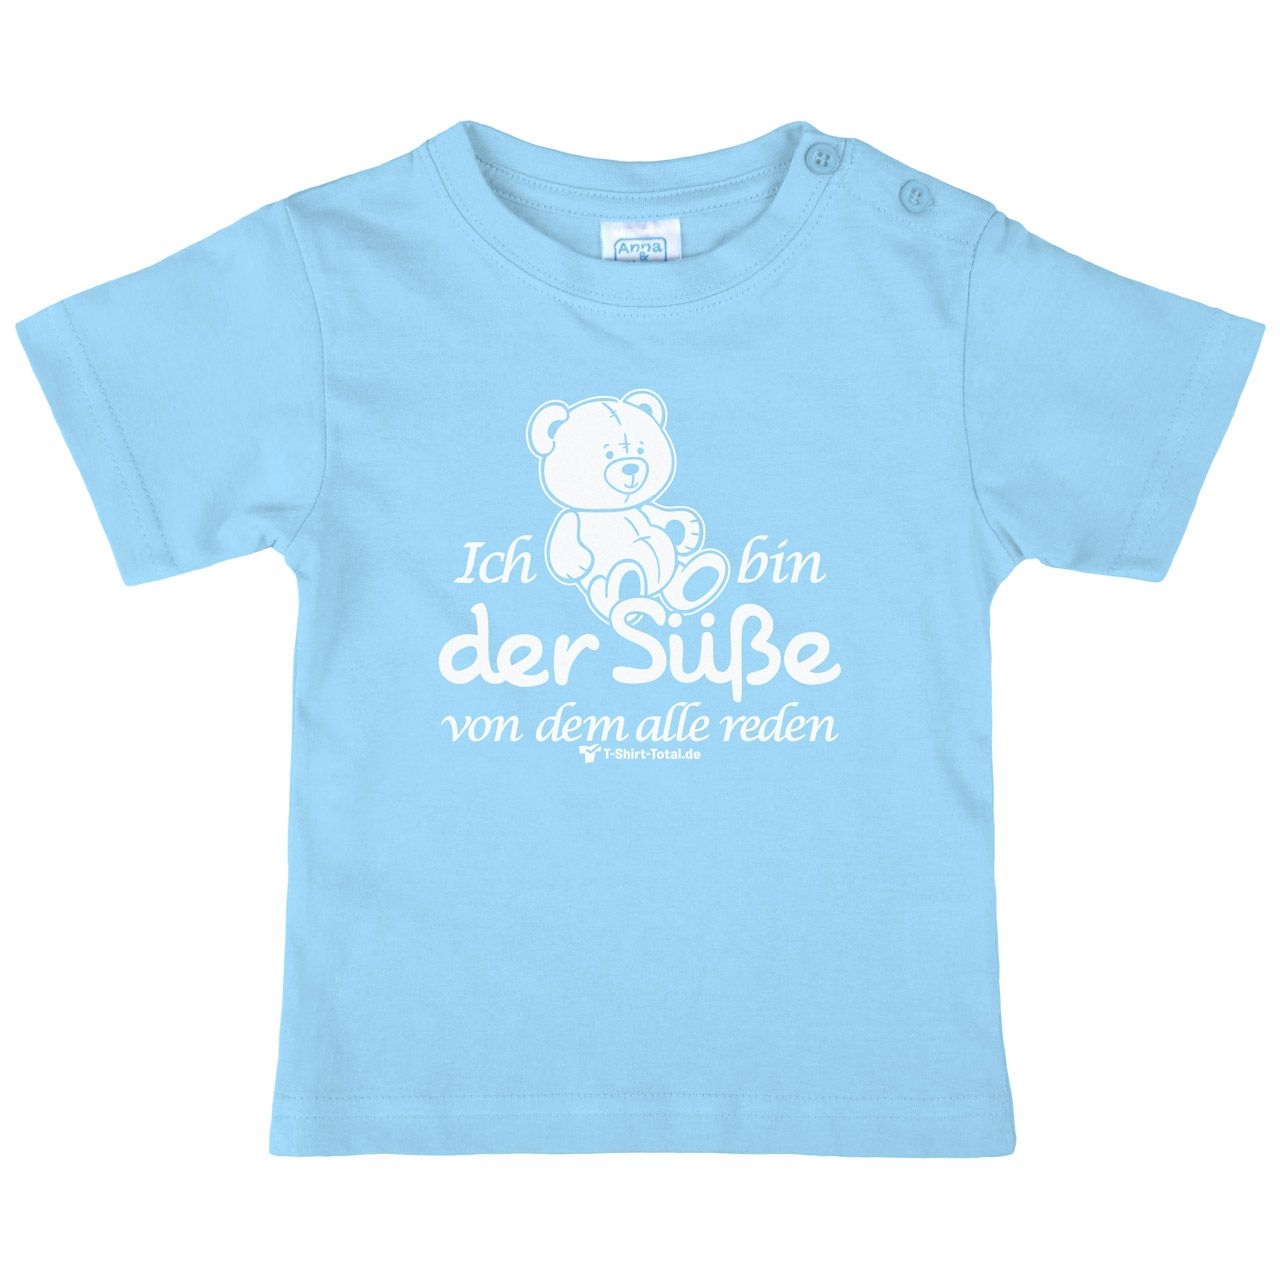 Der Süße Kinder T-Shirt hellblau 56 / 62